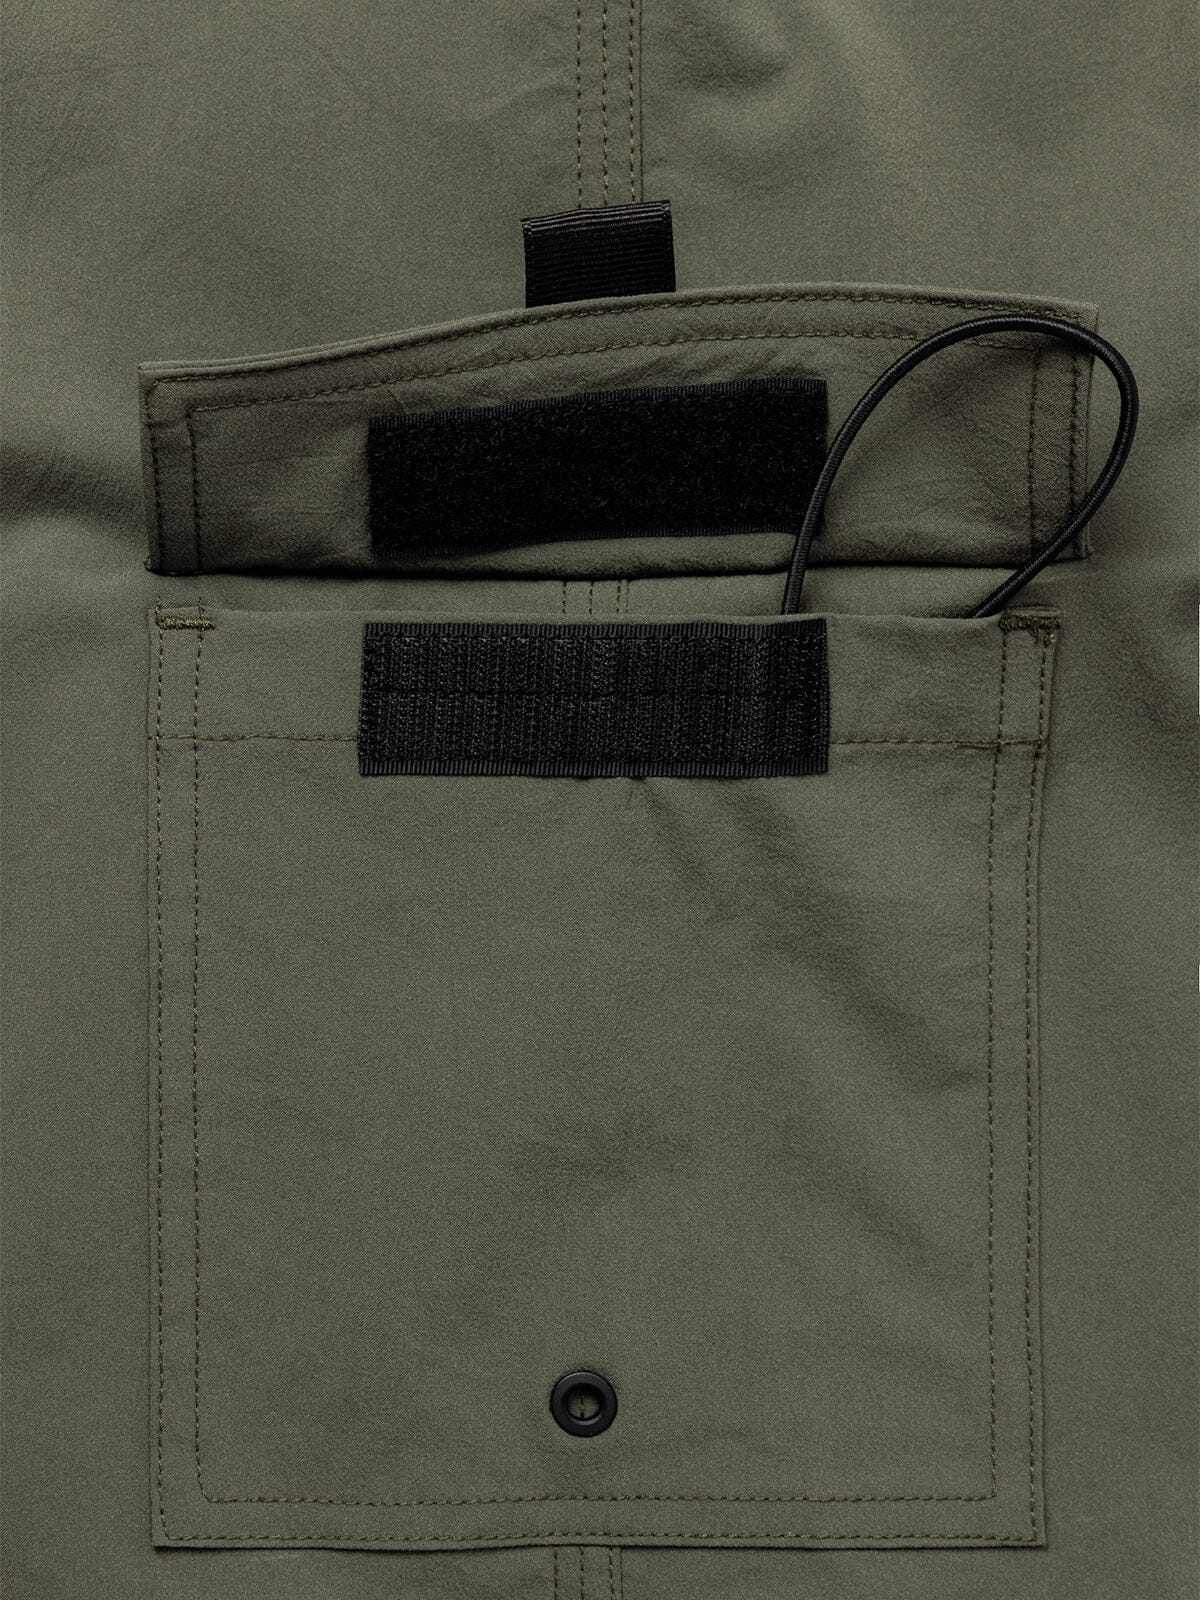 Ocho by Mission Workshop - Weersbestendige tassen & technische kleding - San Francisco & Los Angeles - Gemaakt om lang mee te gaan - Voor altijd gegarandeerd